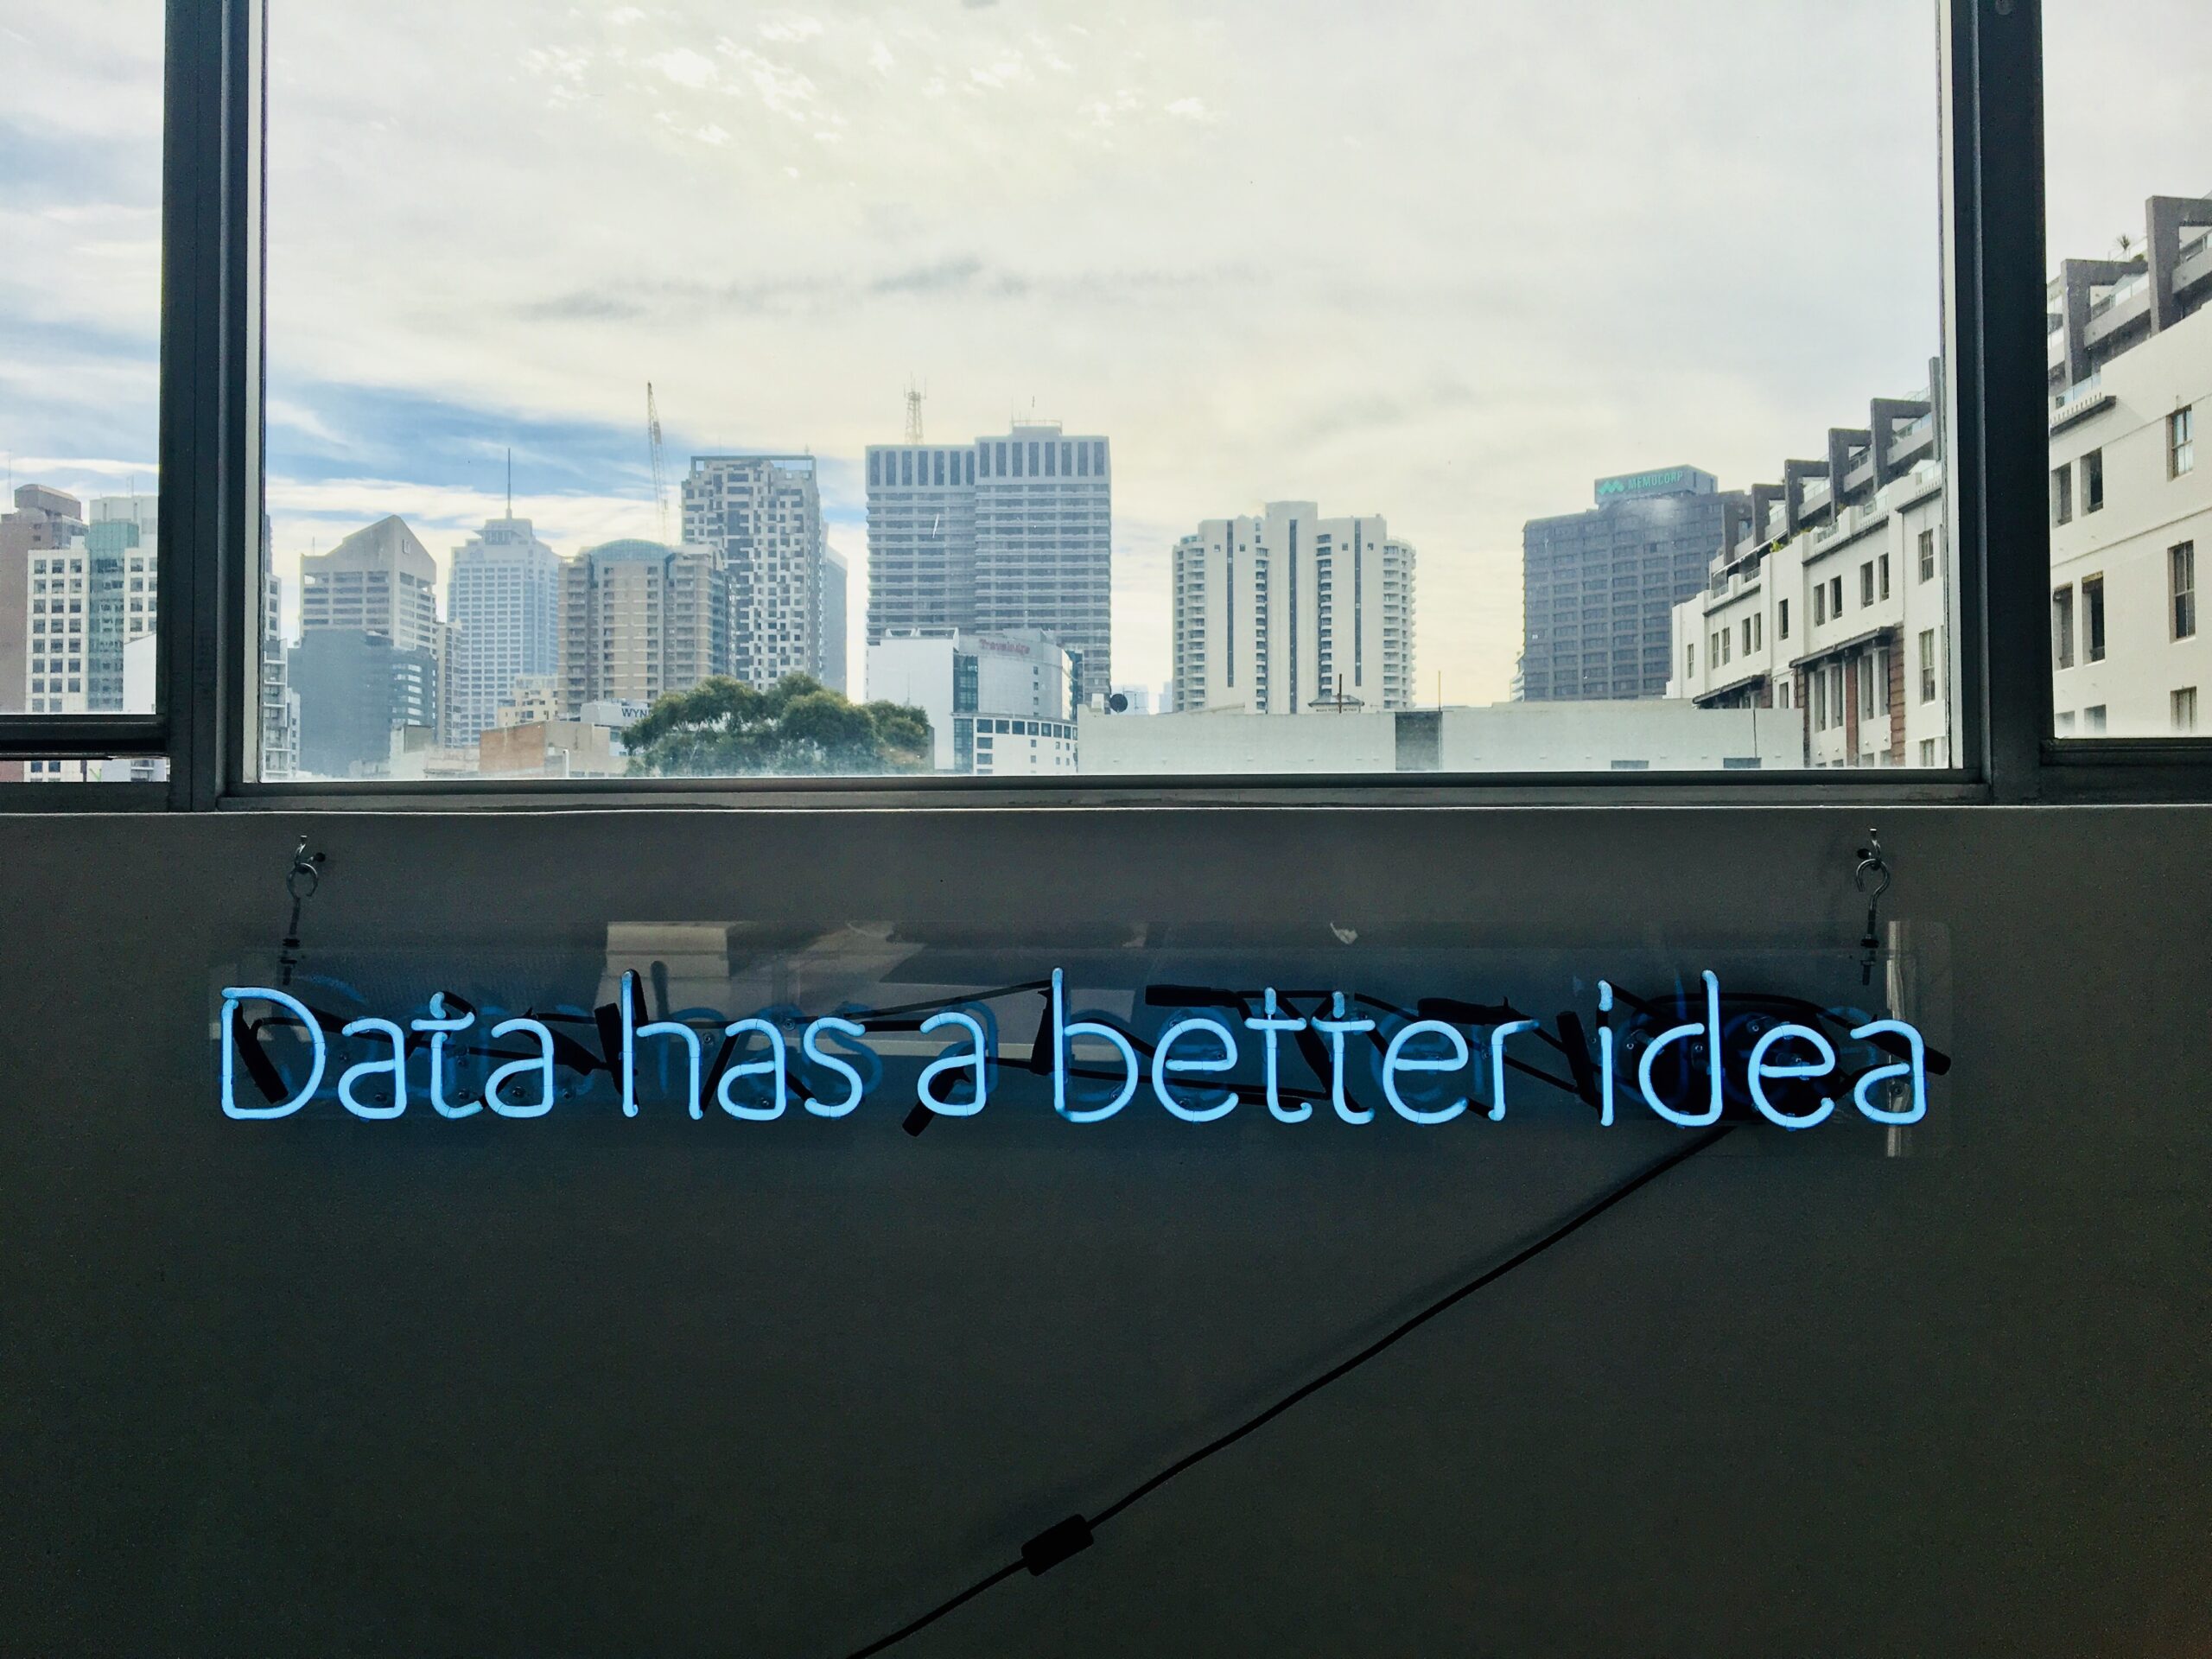 Bild: "Data has a better Idea"